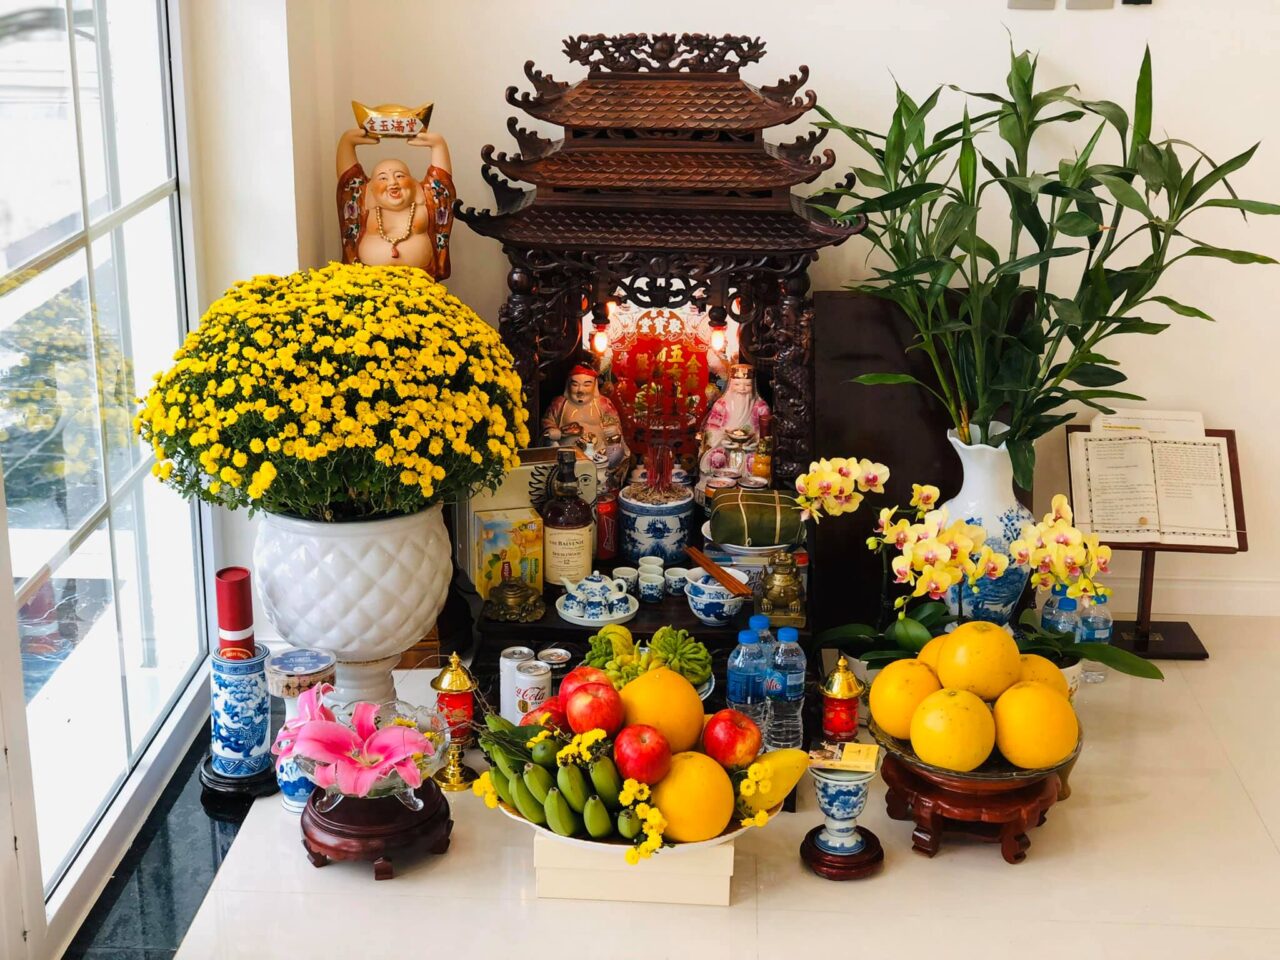 Trang trí bàn thờ ông Địa với đầy đủ hương nhang hoa quả tươi